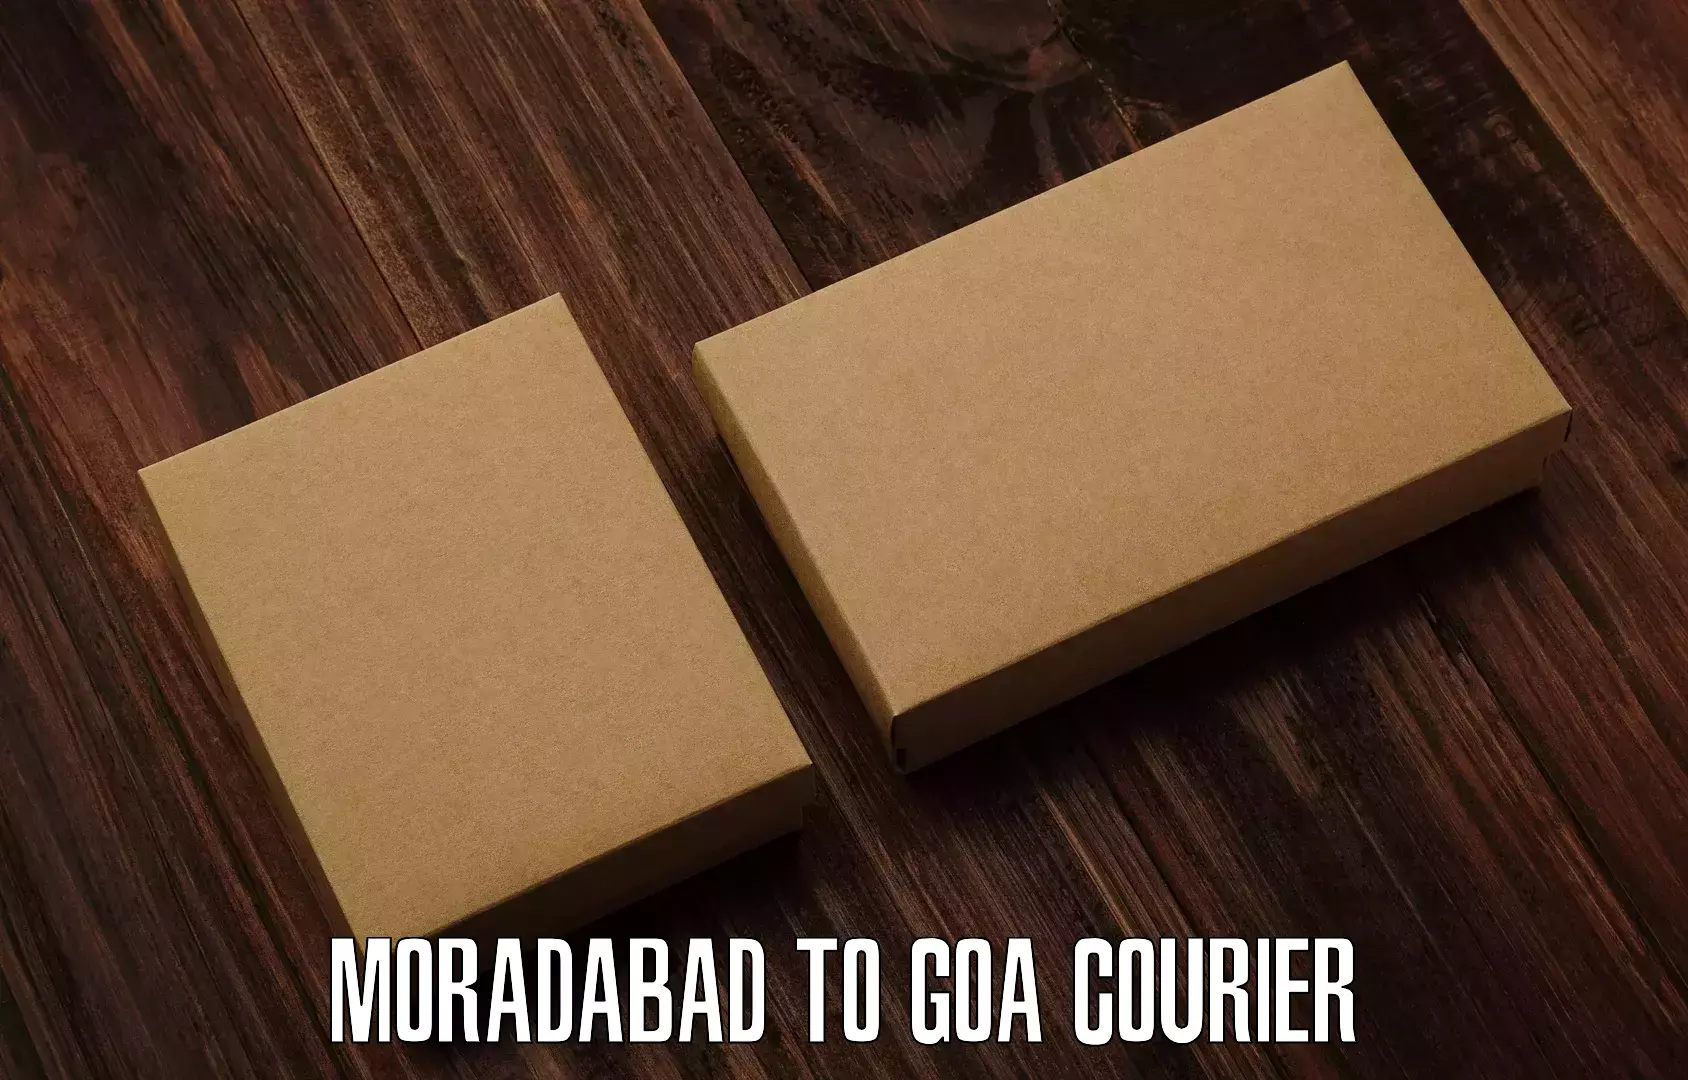 Digital courier platforms Moradabad to NIT Goa